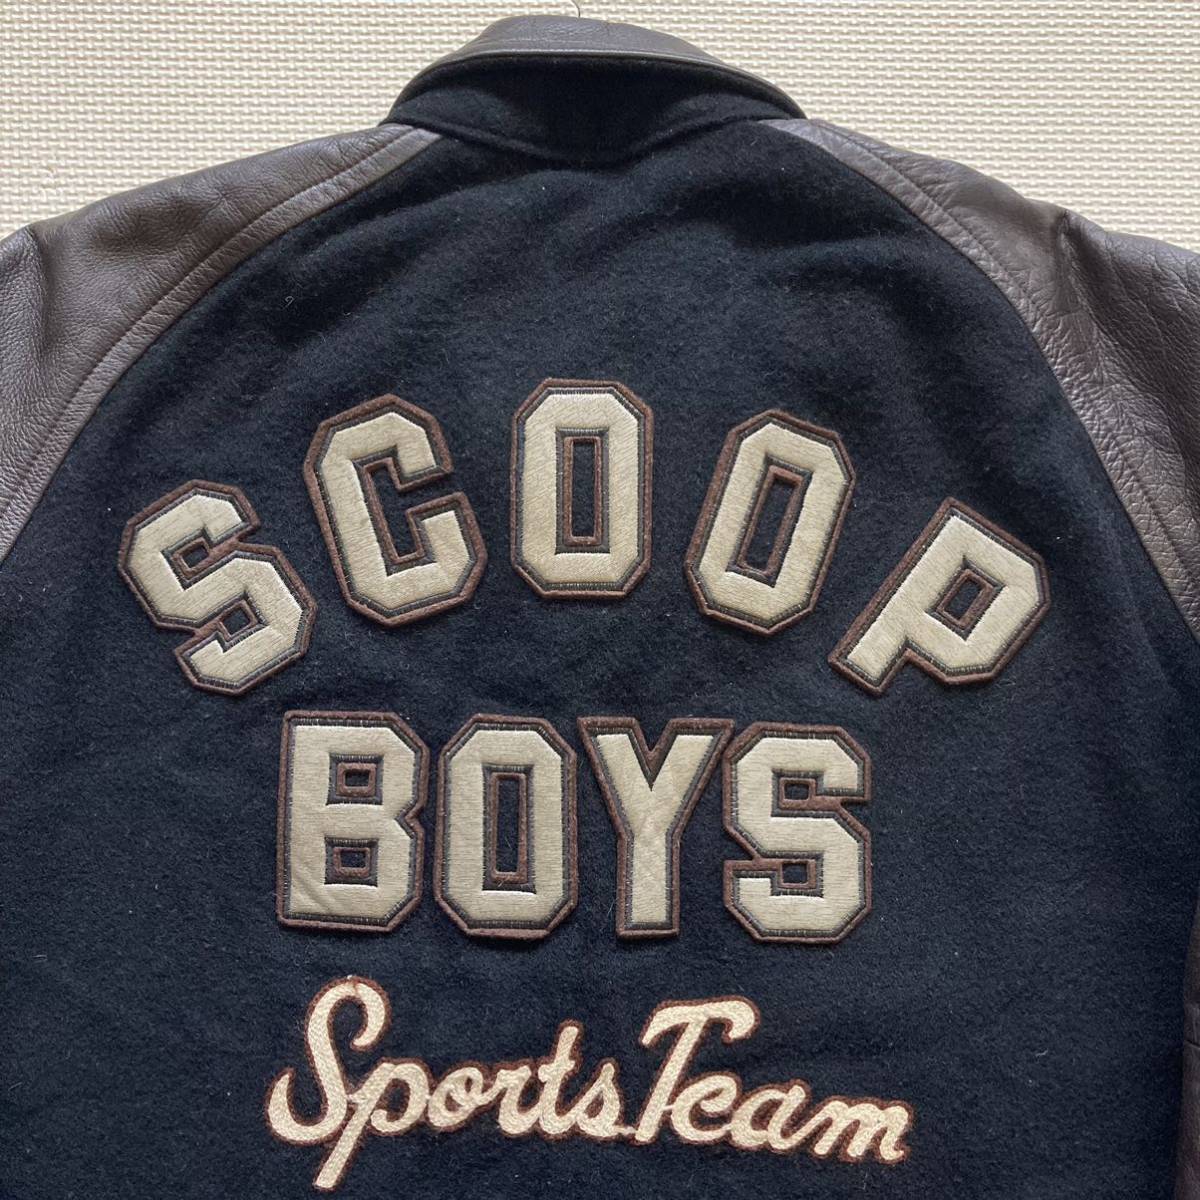 SCOOP BOYS スクープマン スクープボーイズ 袖革 スタジャン ジャケット FREE_画像3